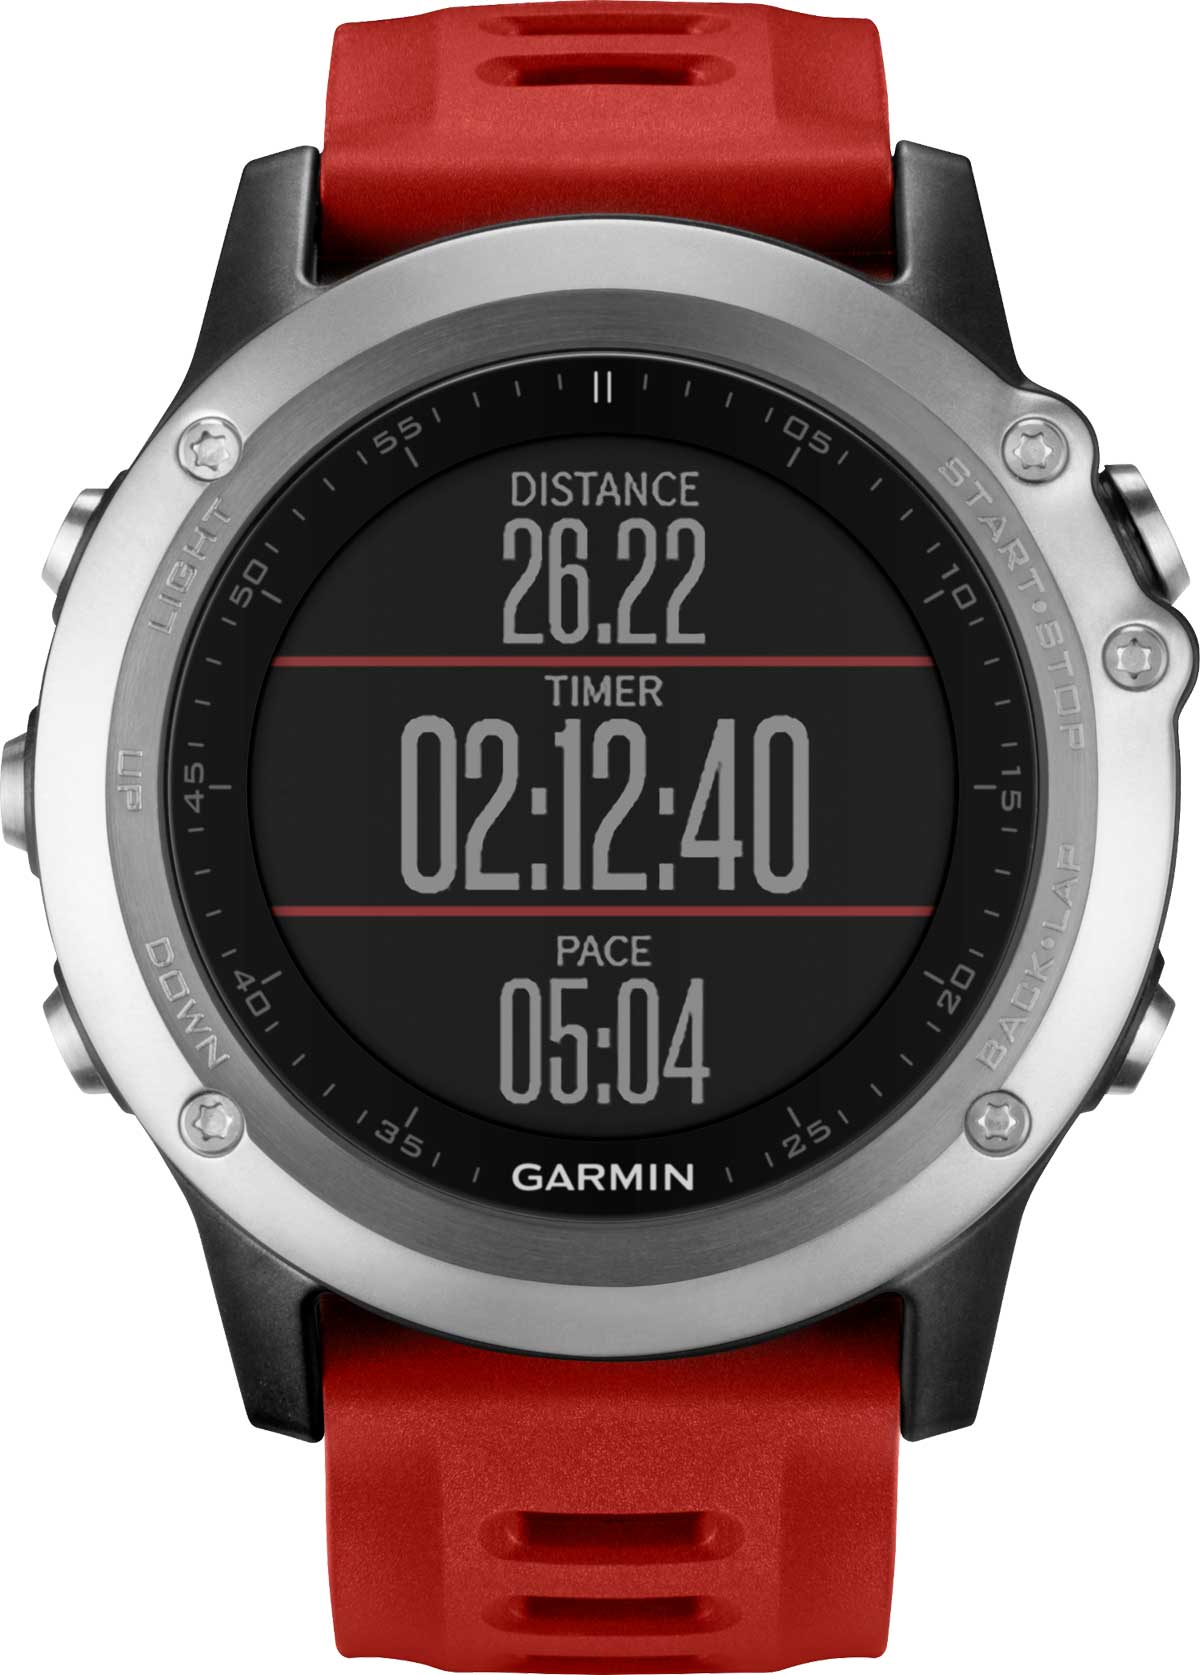 Garmin presenta fēnix 3, reloj multideporte con GPS y con funciones inteligentes